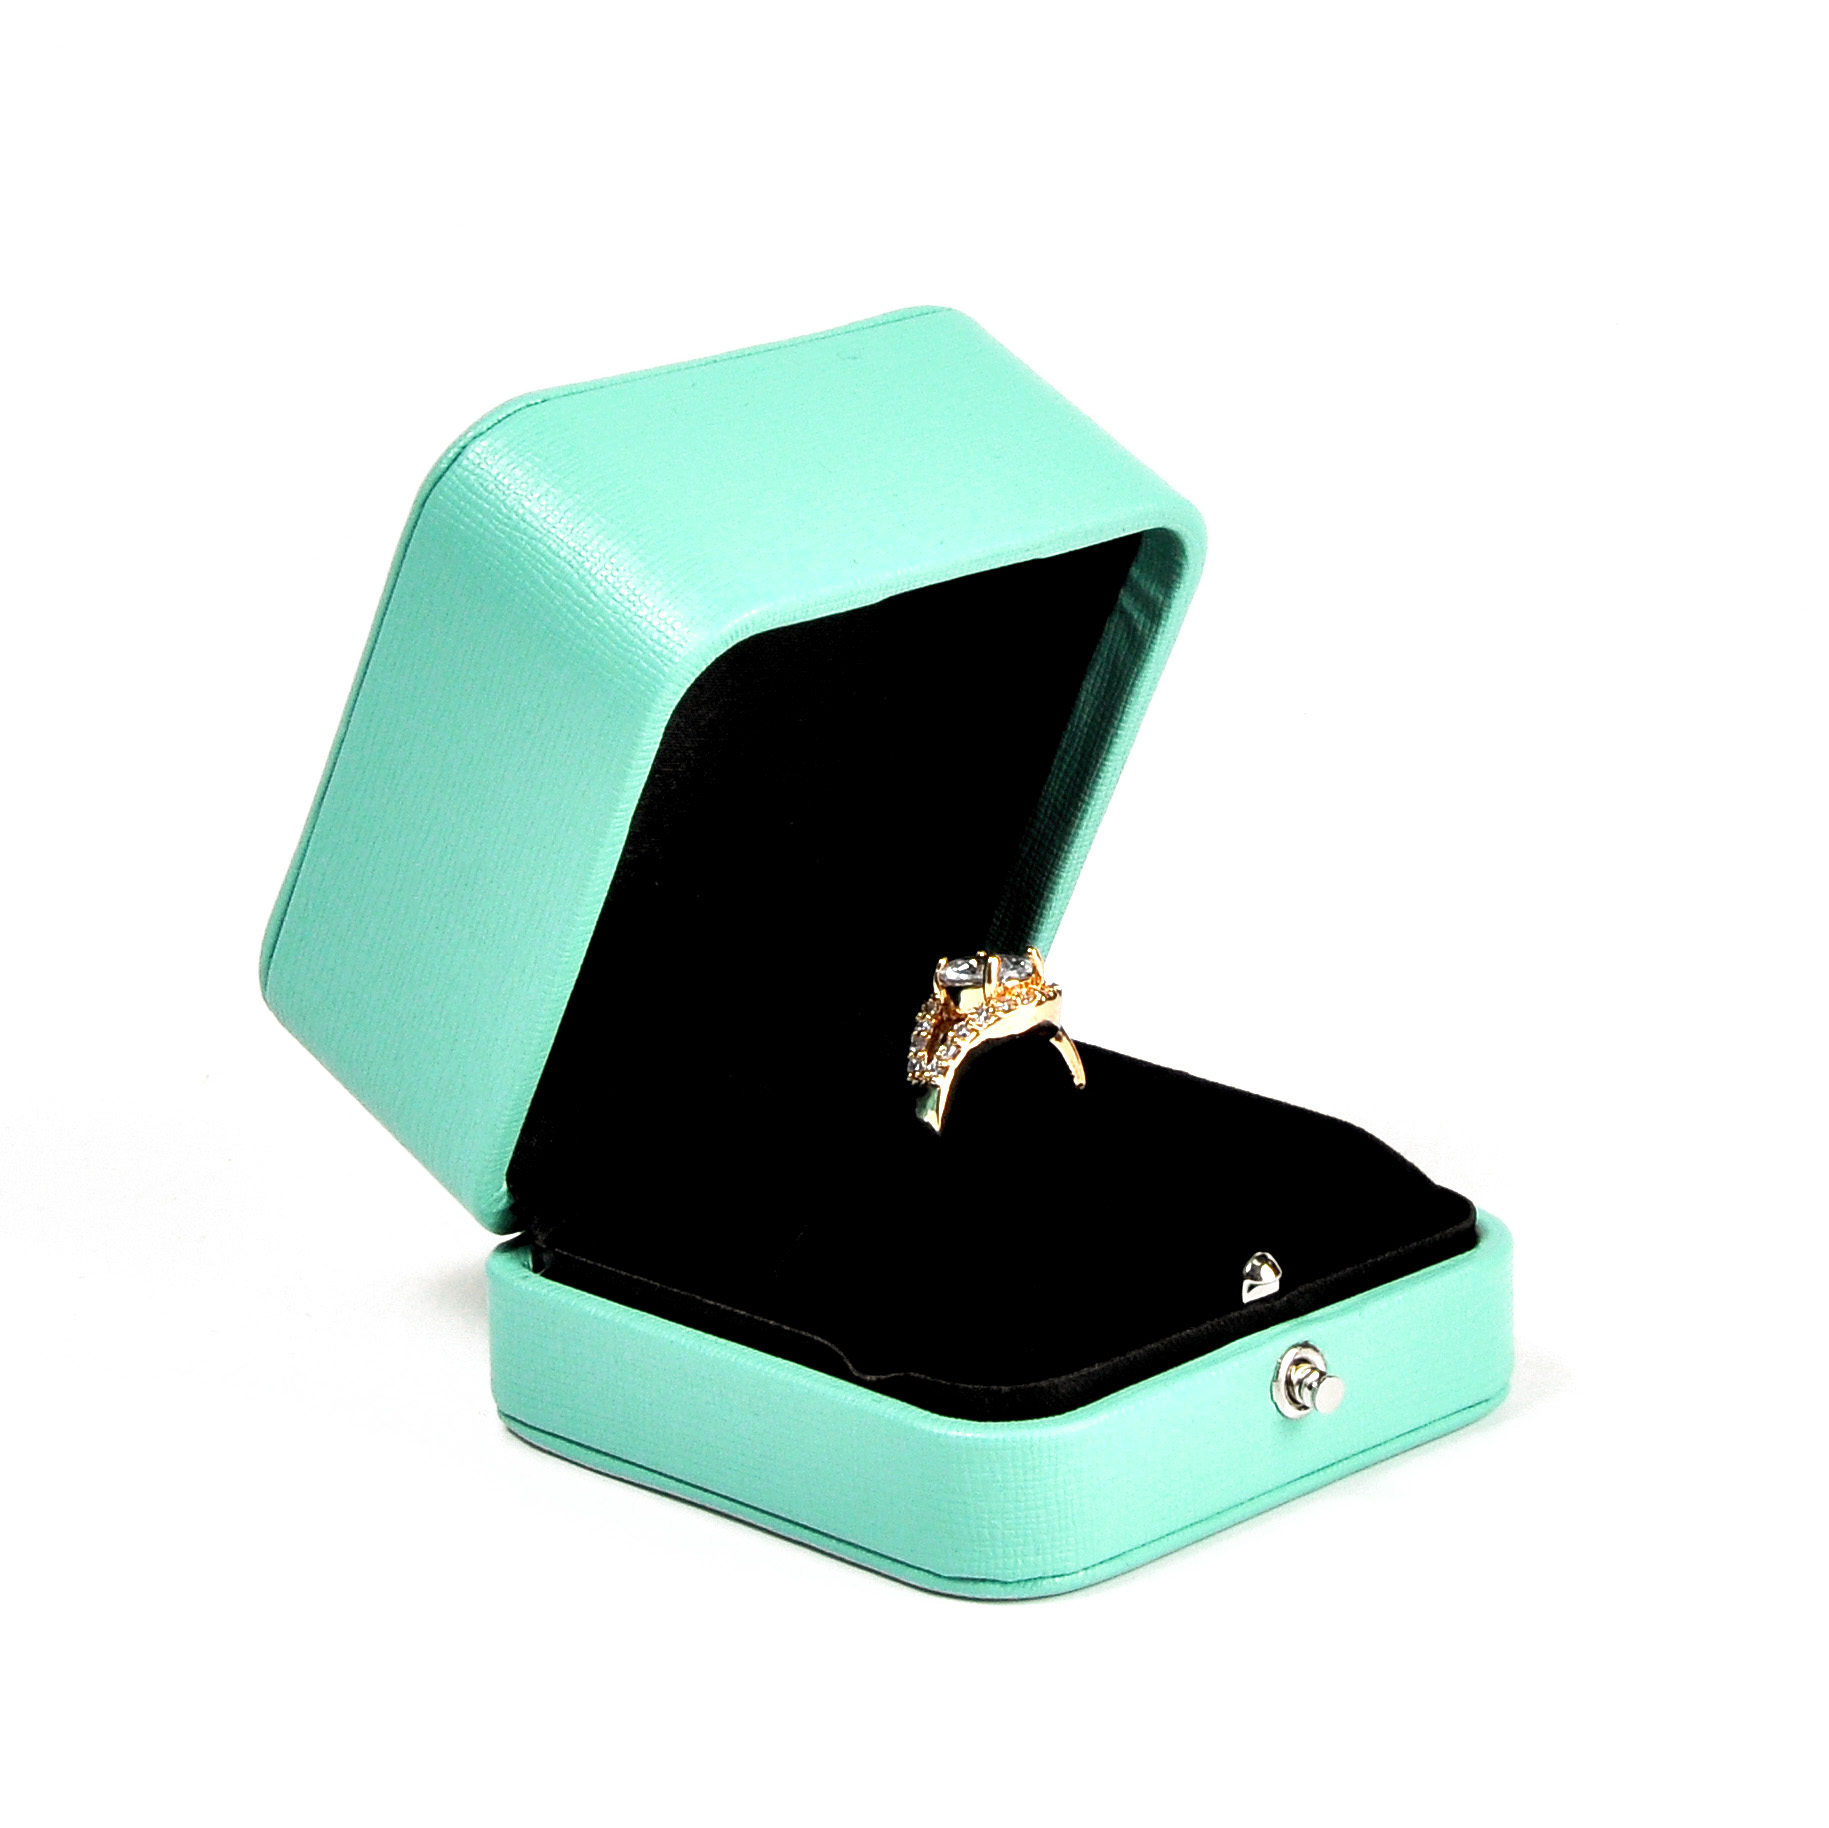 Caixa de plástico para embalagem de joias envolta em caixa de joias estilo Cartier de couro Pu